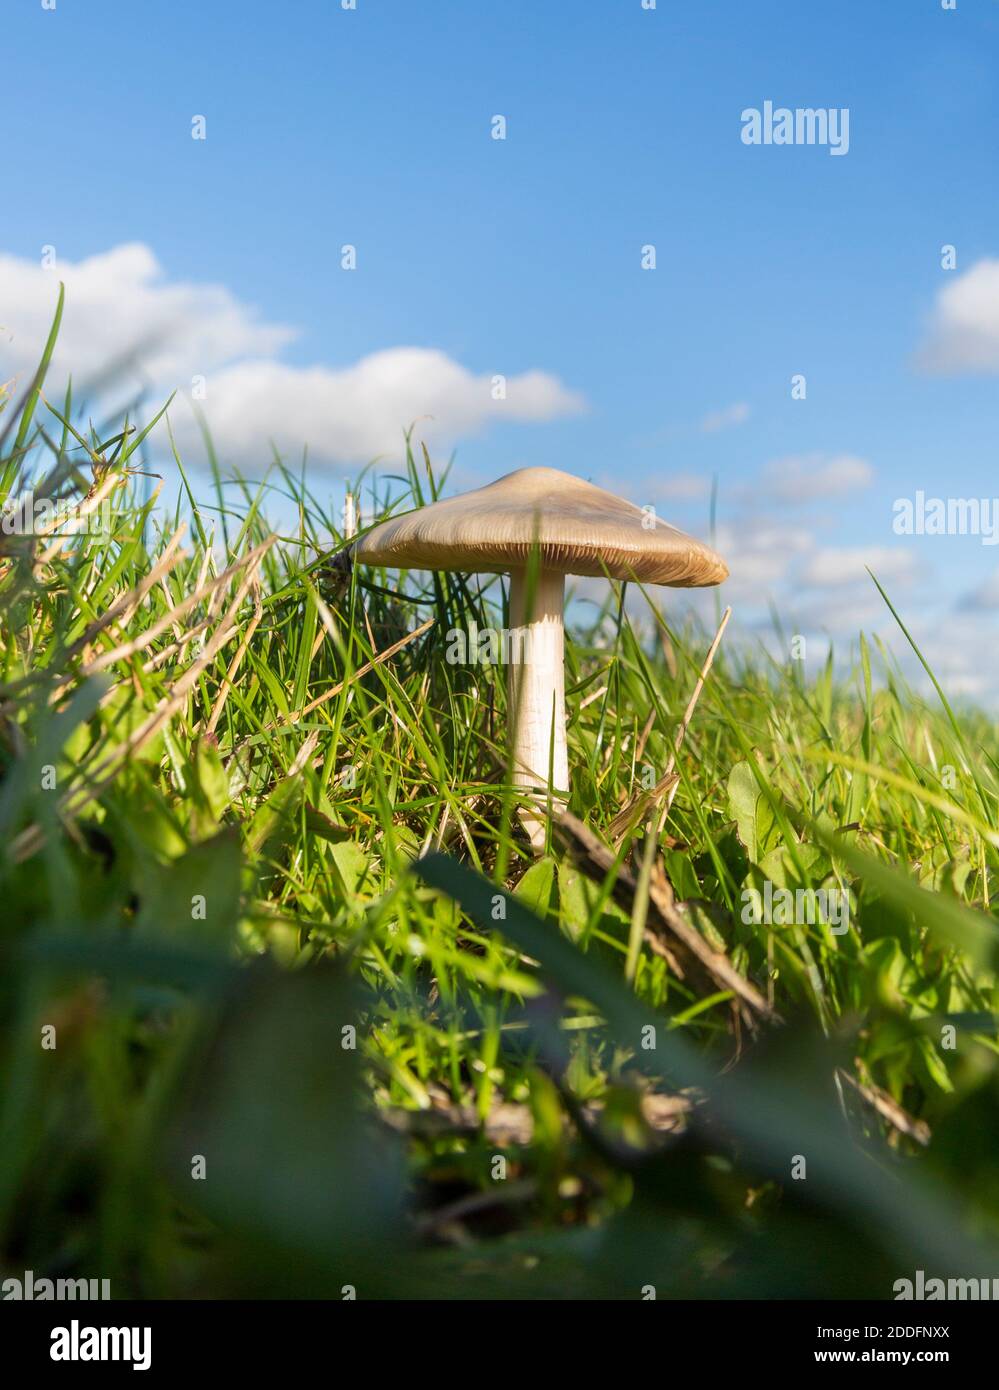 Vista ad angolo basso del fungo di campo, Agaricus campestris, che cresce in erba con cielo blu Foto Stock